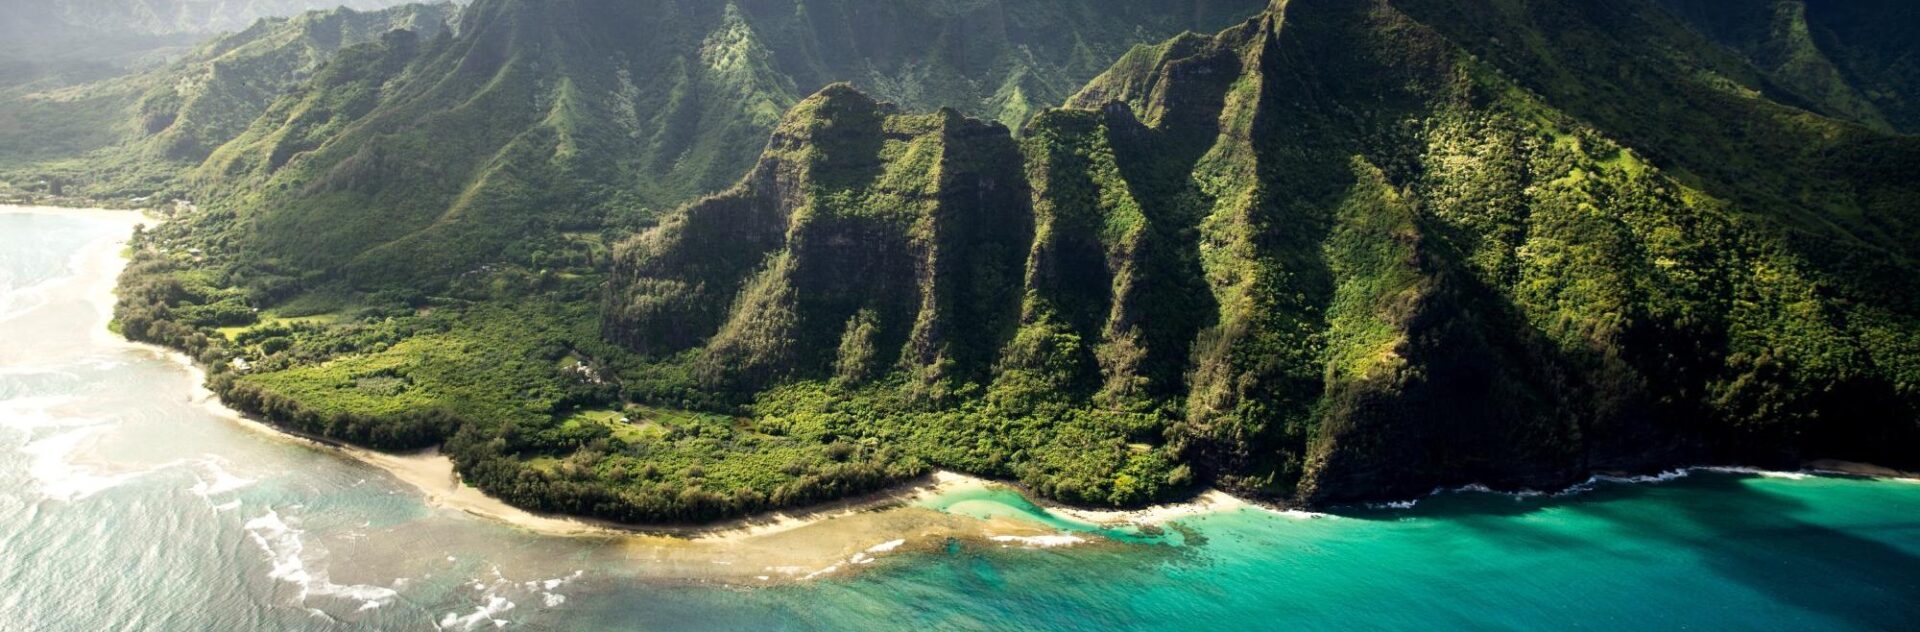 Hawaii's Volcanic Shoreline